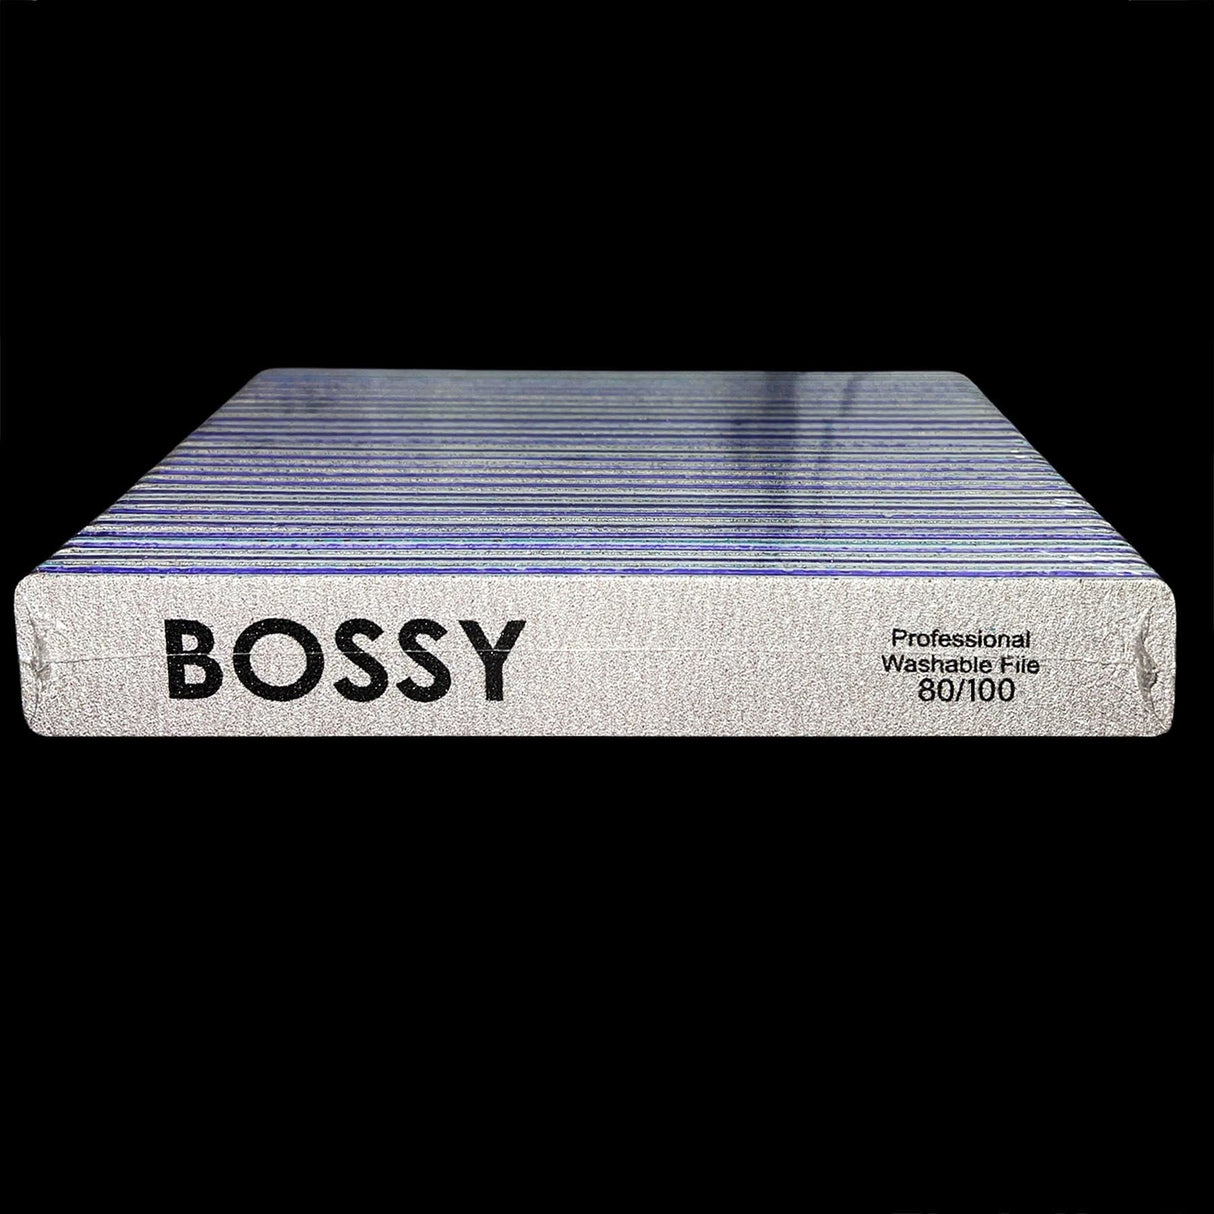 BOSSY Washable File Jumbo (Square) ZEBRA (80/100)